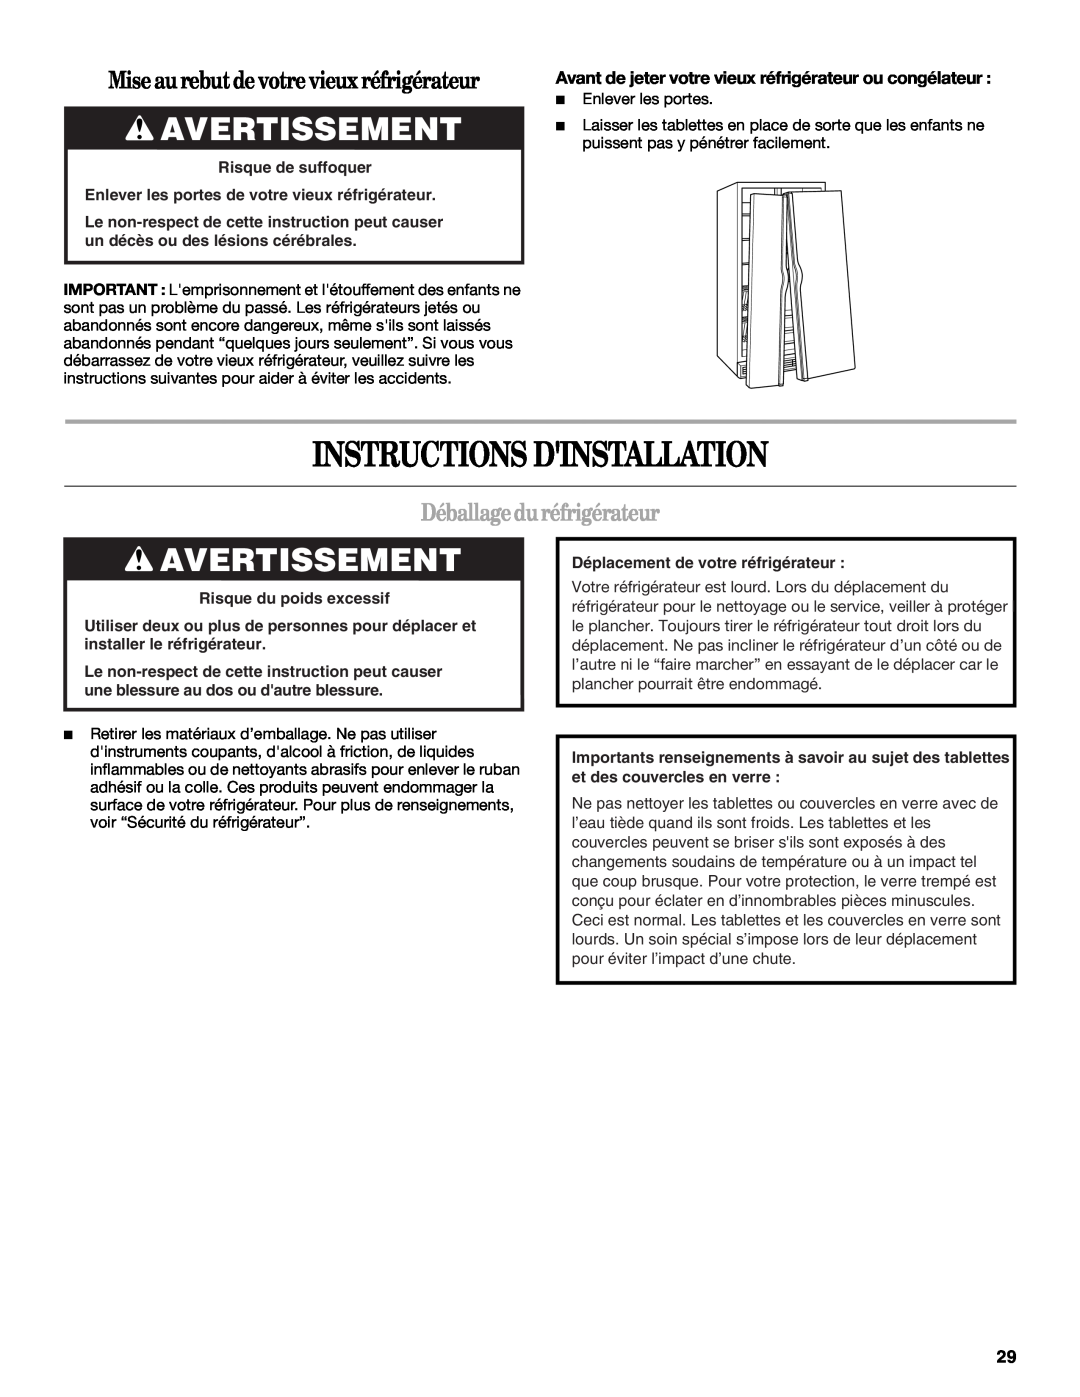 Whirlpool ED5FHAXVS Instructions Dinstallation, Avertissement, Mise au rebutde votre vieux réfrigérateur 